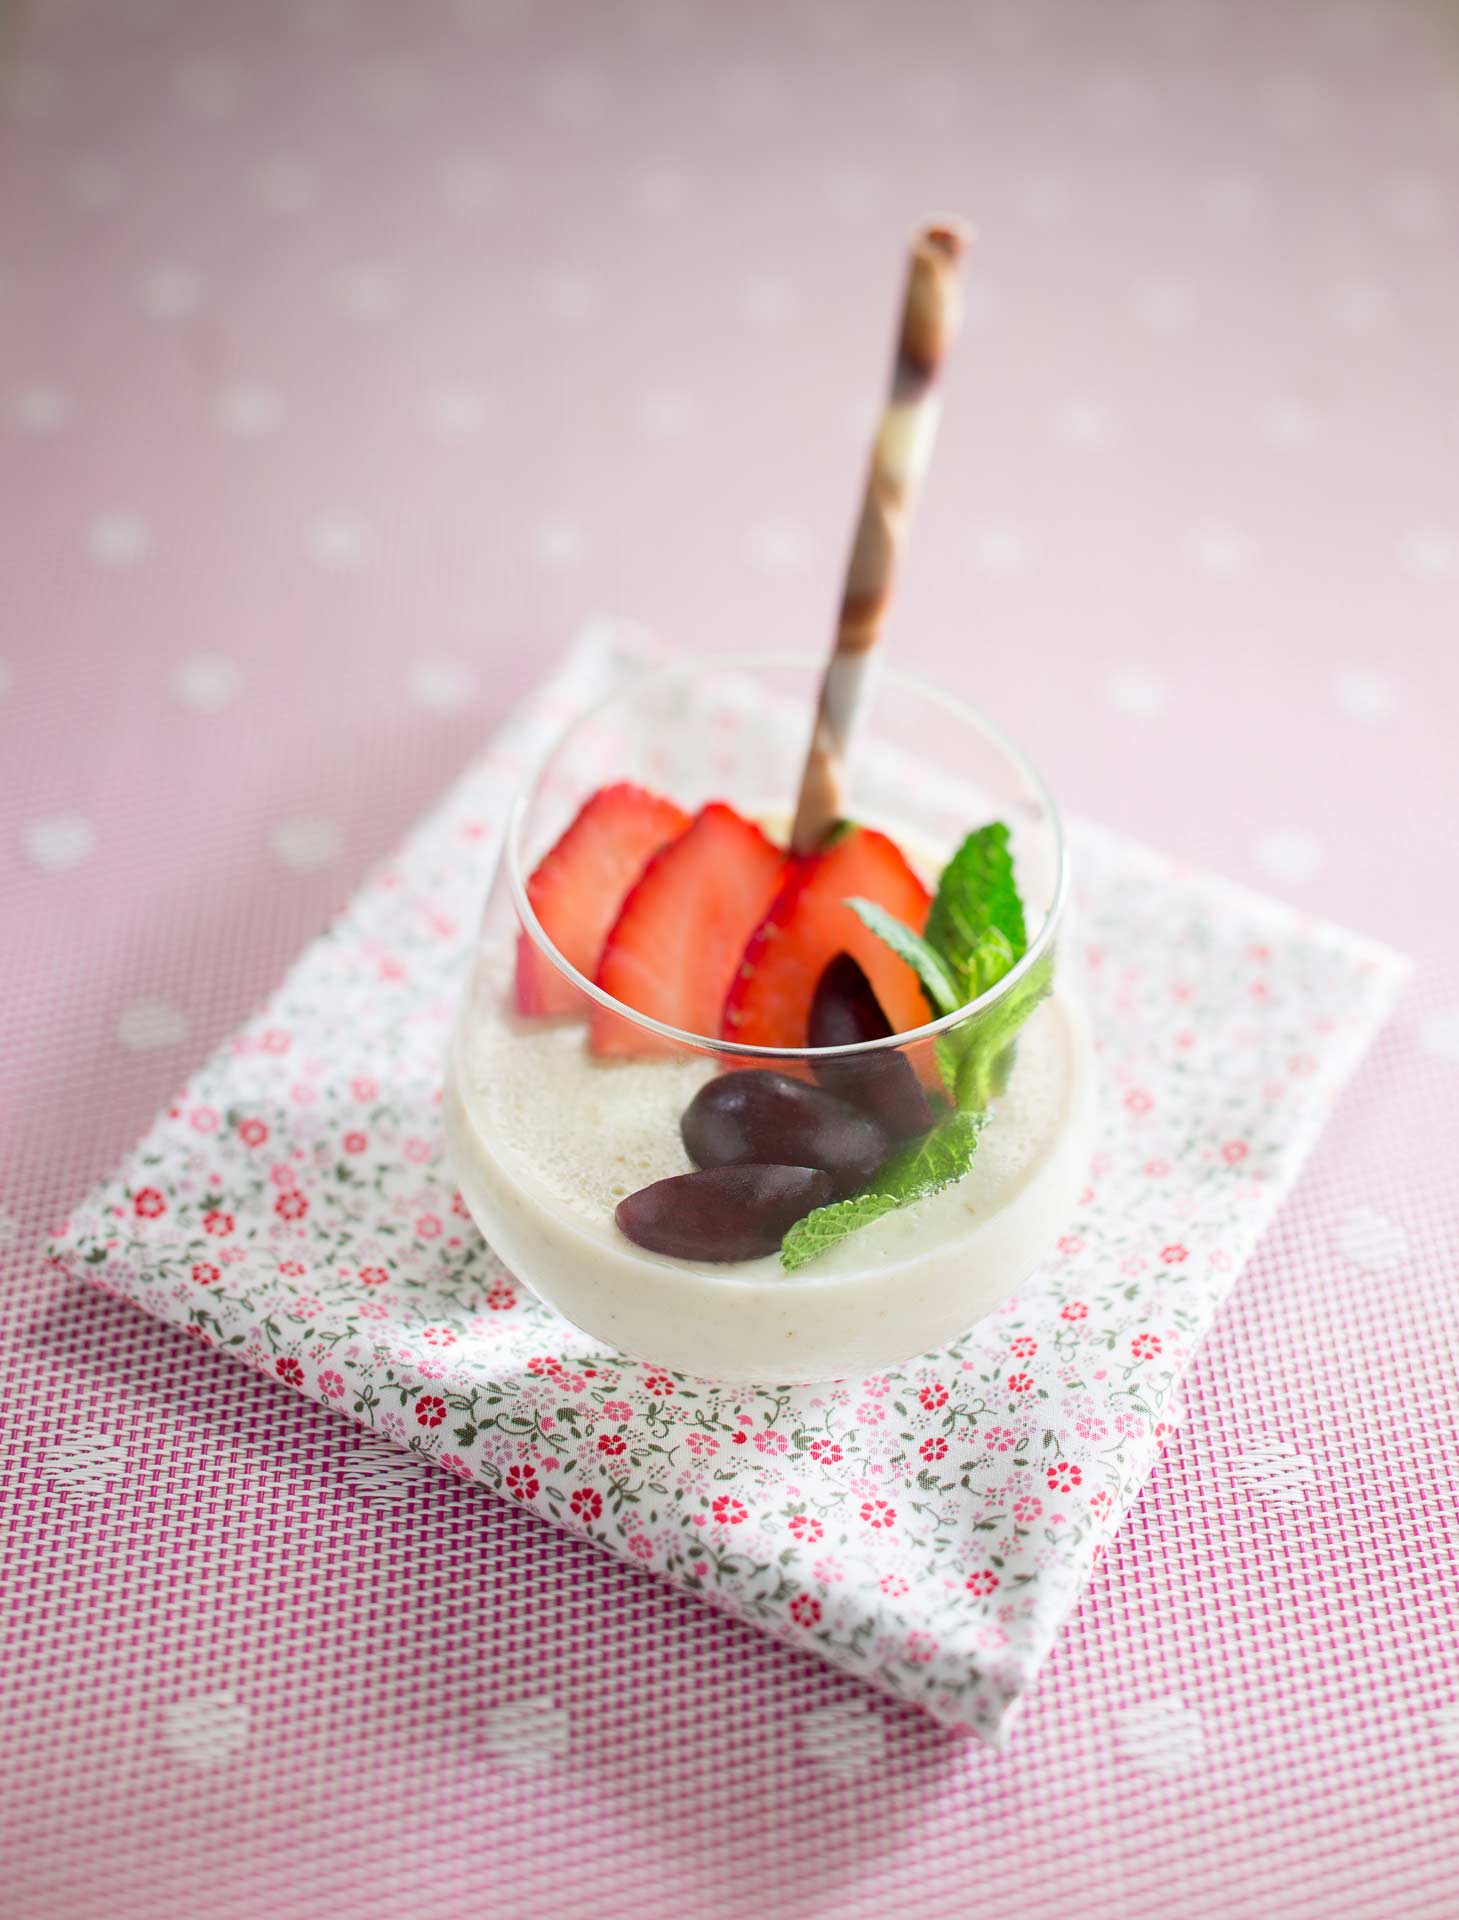 Crème dessert fraise et prune - Visuel culinaire réalisé en studio photo professionnel à Strasbourg dans le Bas-Rhin en Alsace